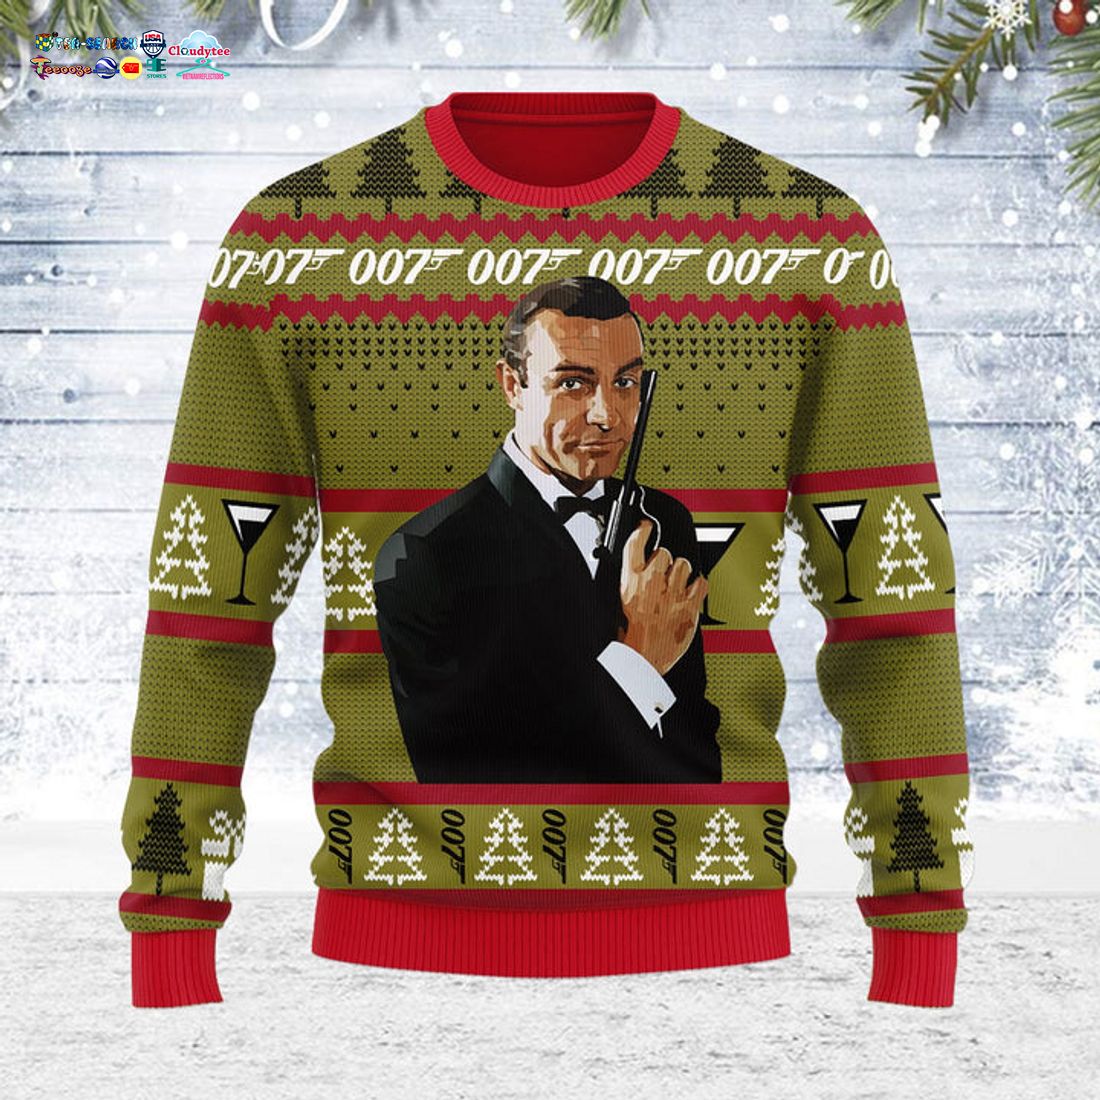 James Bond 007 Ugly Christmas Sweater